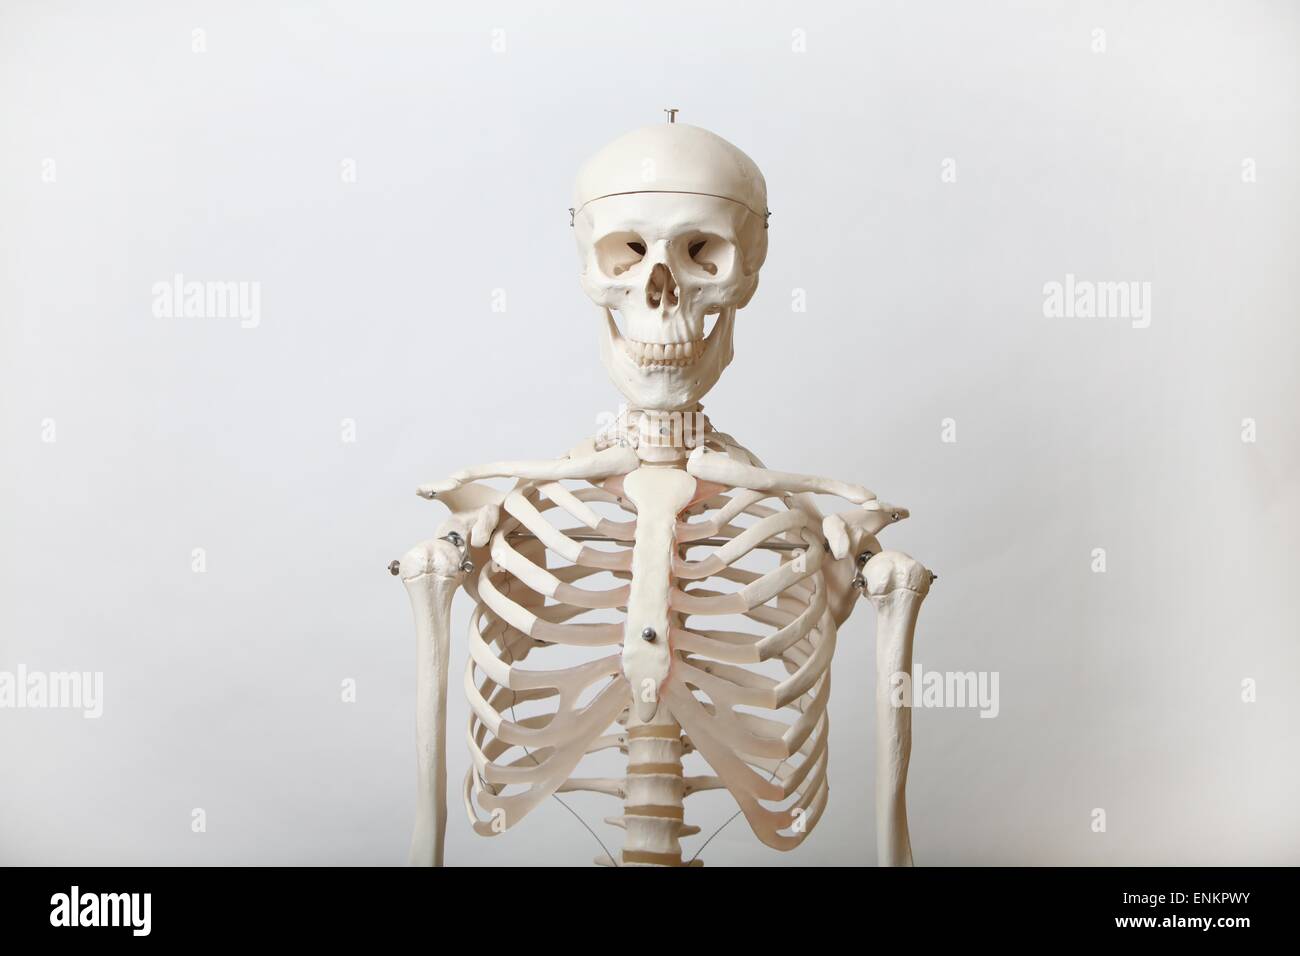 Ein Leben Größe Modell eines menschlichen Skeletts. Bild von James Boardman Stockfoto